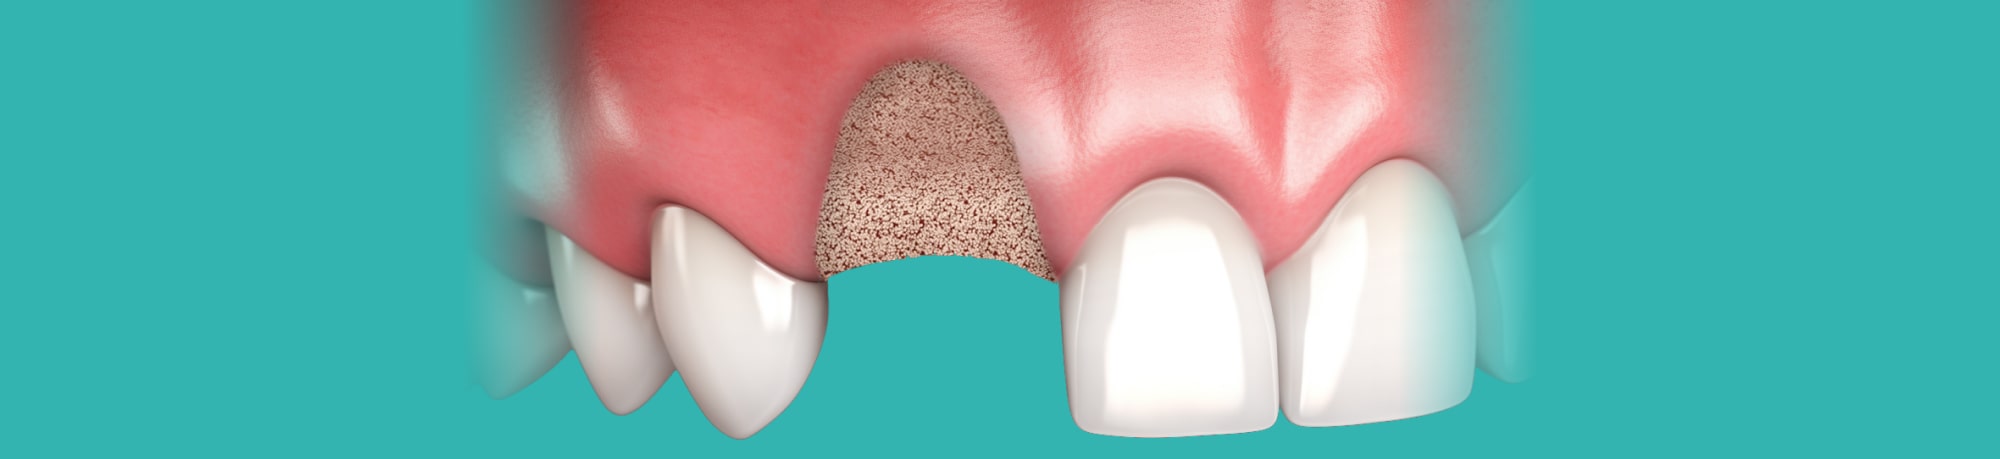 Как и для чего делают наращивание костной ткани при имплантации зубов?